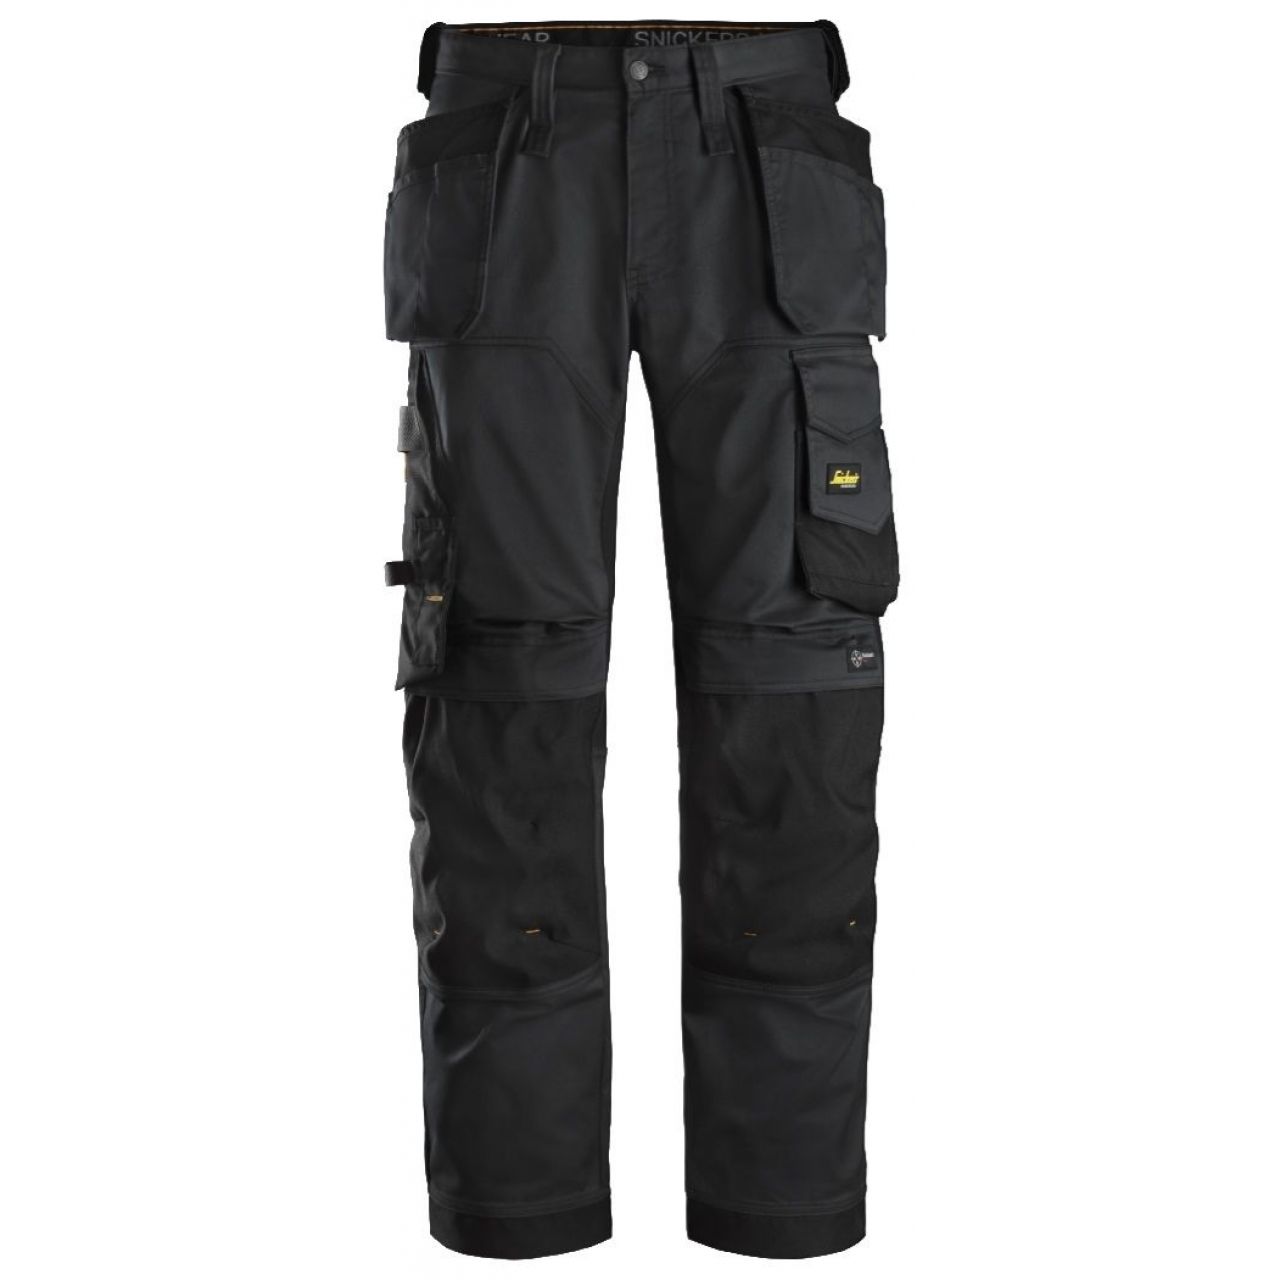 Pantalon elastico ajuste holgado AllroundWork bolsillos flotantes negro talla 124